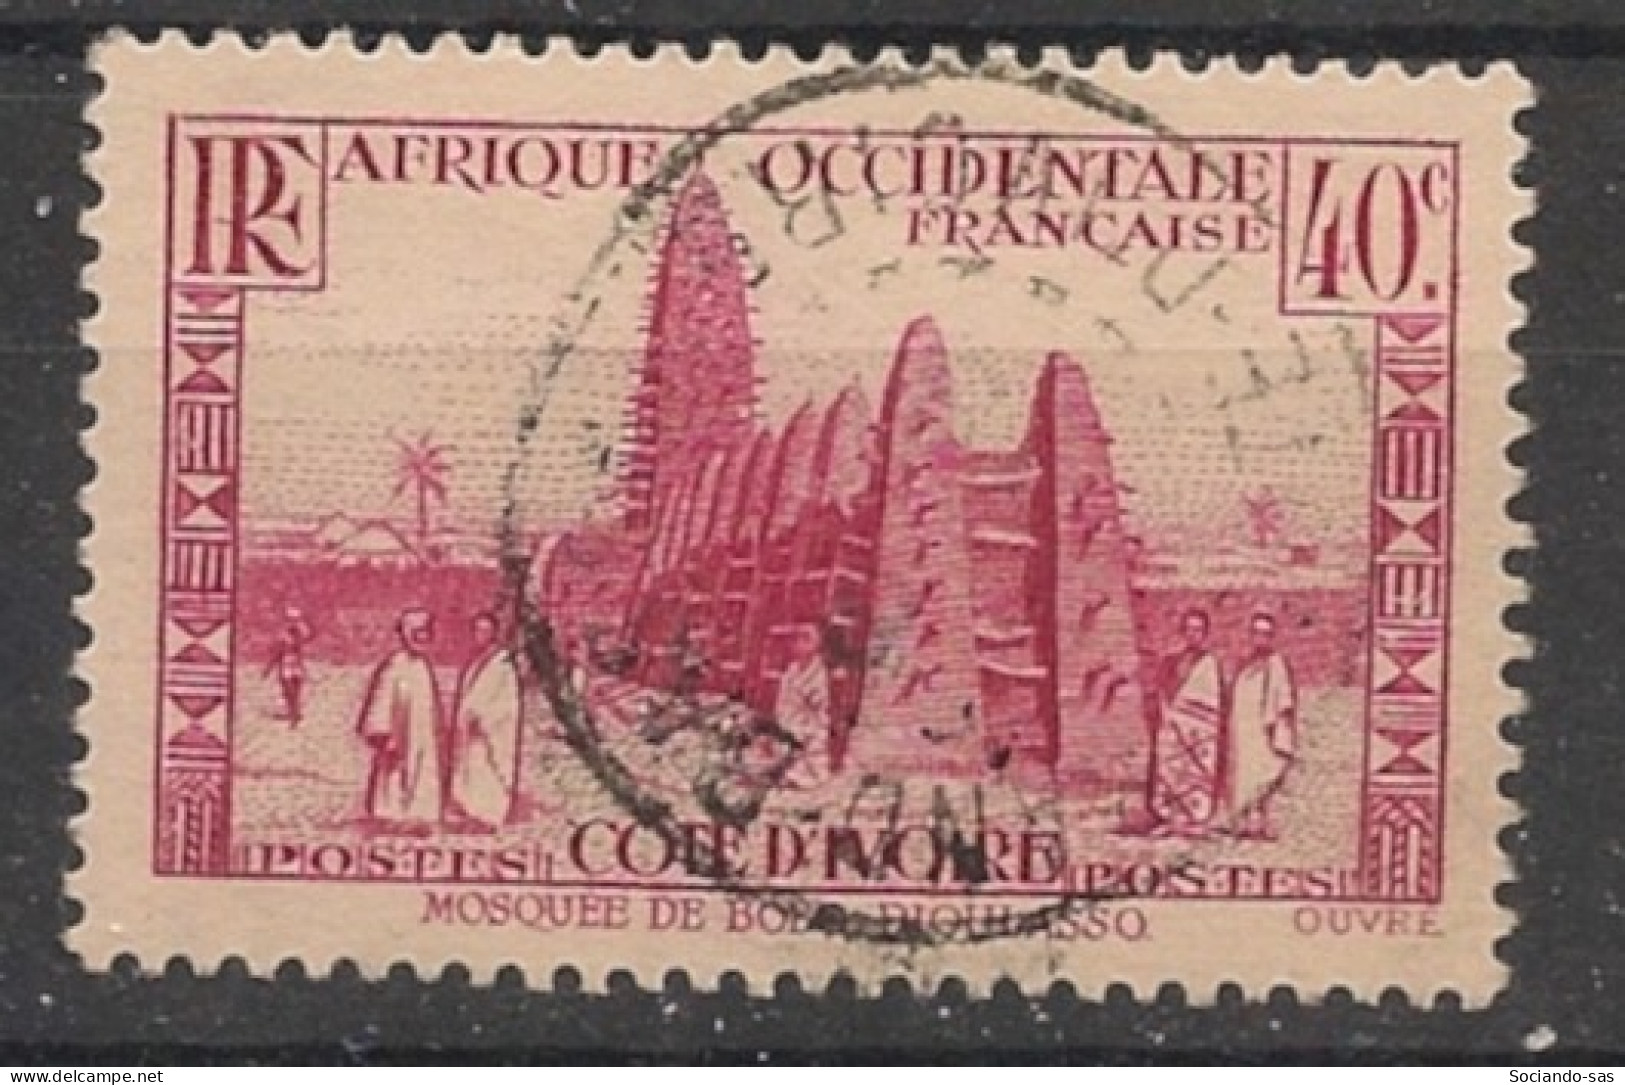 COTE D'IVOIRE - 1936-38 - N°YT. 118 - Mosquée 40c Rose - Oblitéré / Used - Oblitérés